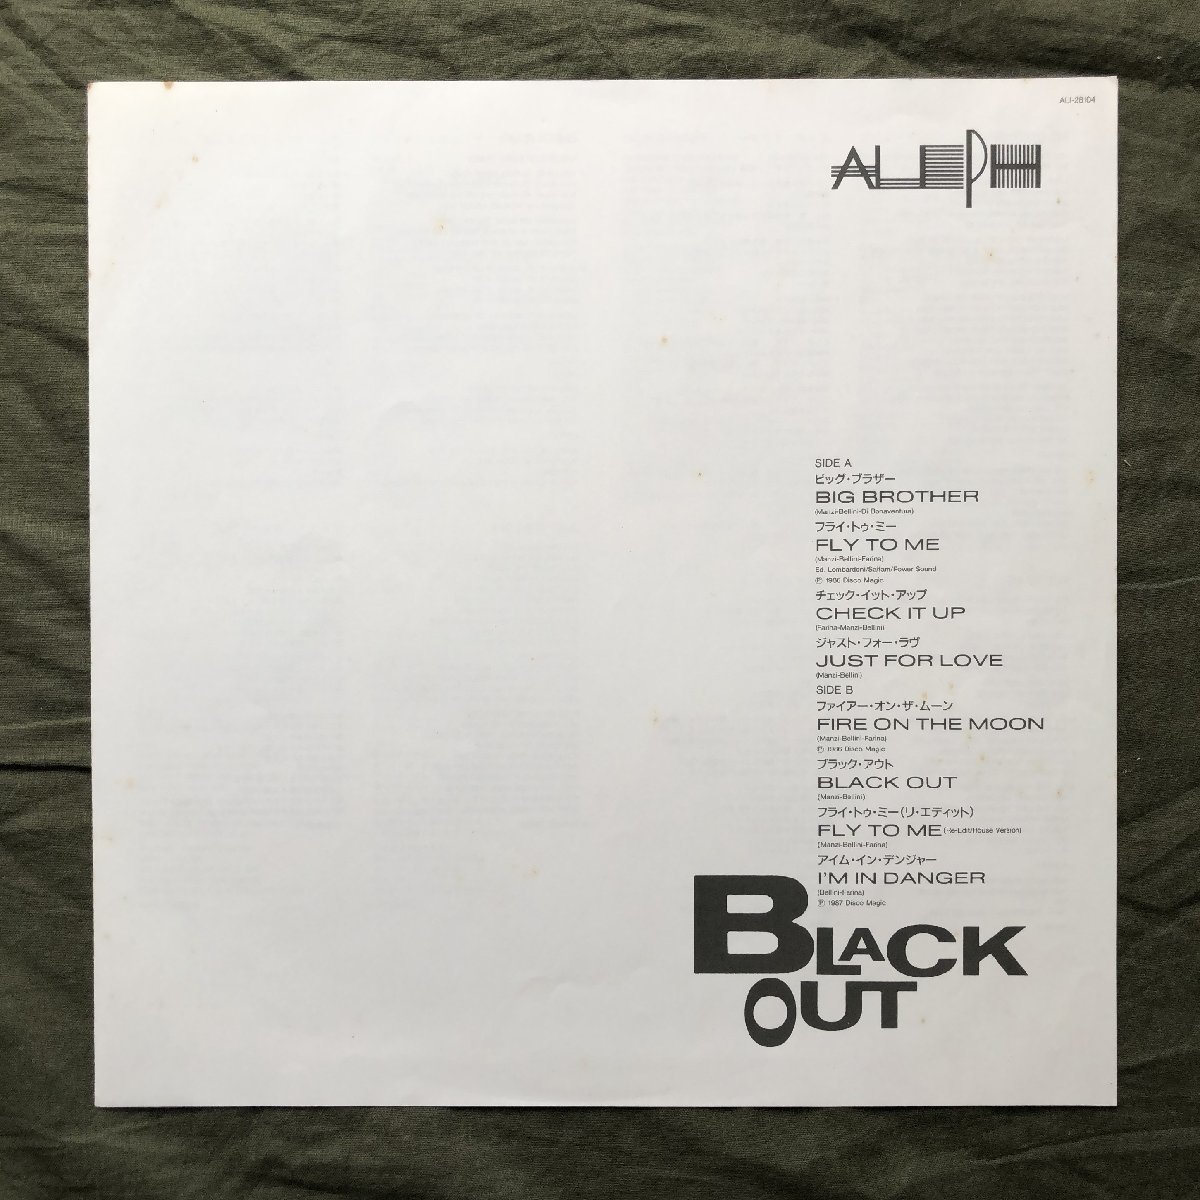 美盤 良ジャケ 激レア 1988年 国内盤 アレフ Aleph LPレコード アレフ１ ビッグ・ブラザー Black Out 帯付 Italian Dance Music Unit_画像6